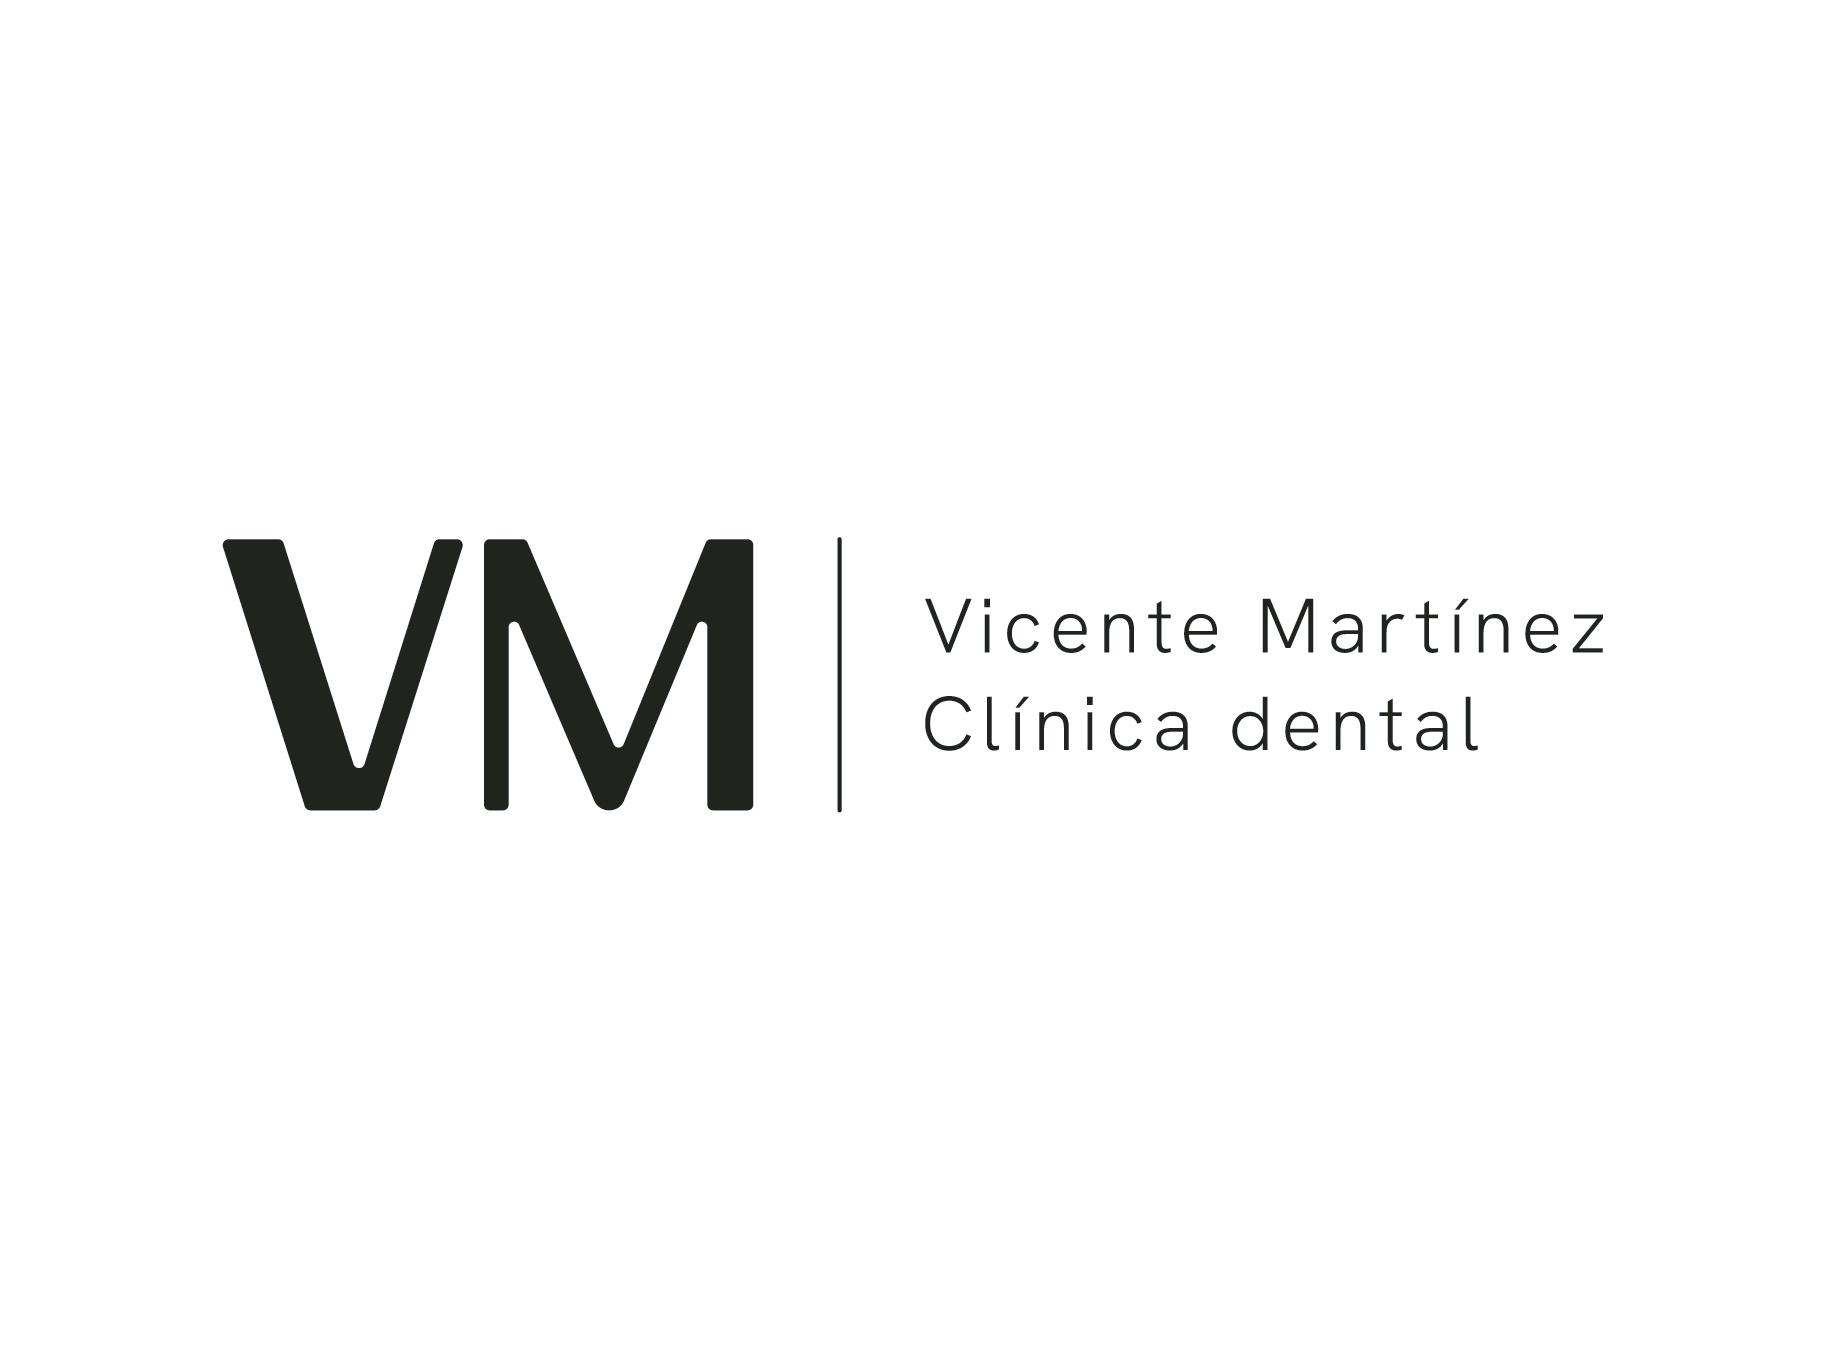 Images Clínica Dental Vicente Martínez VM